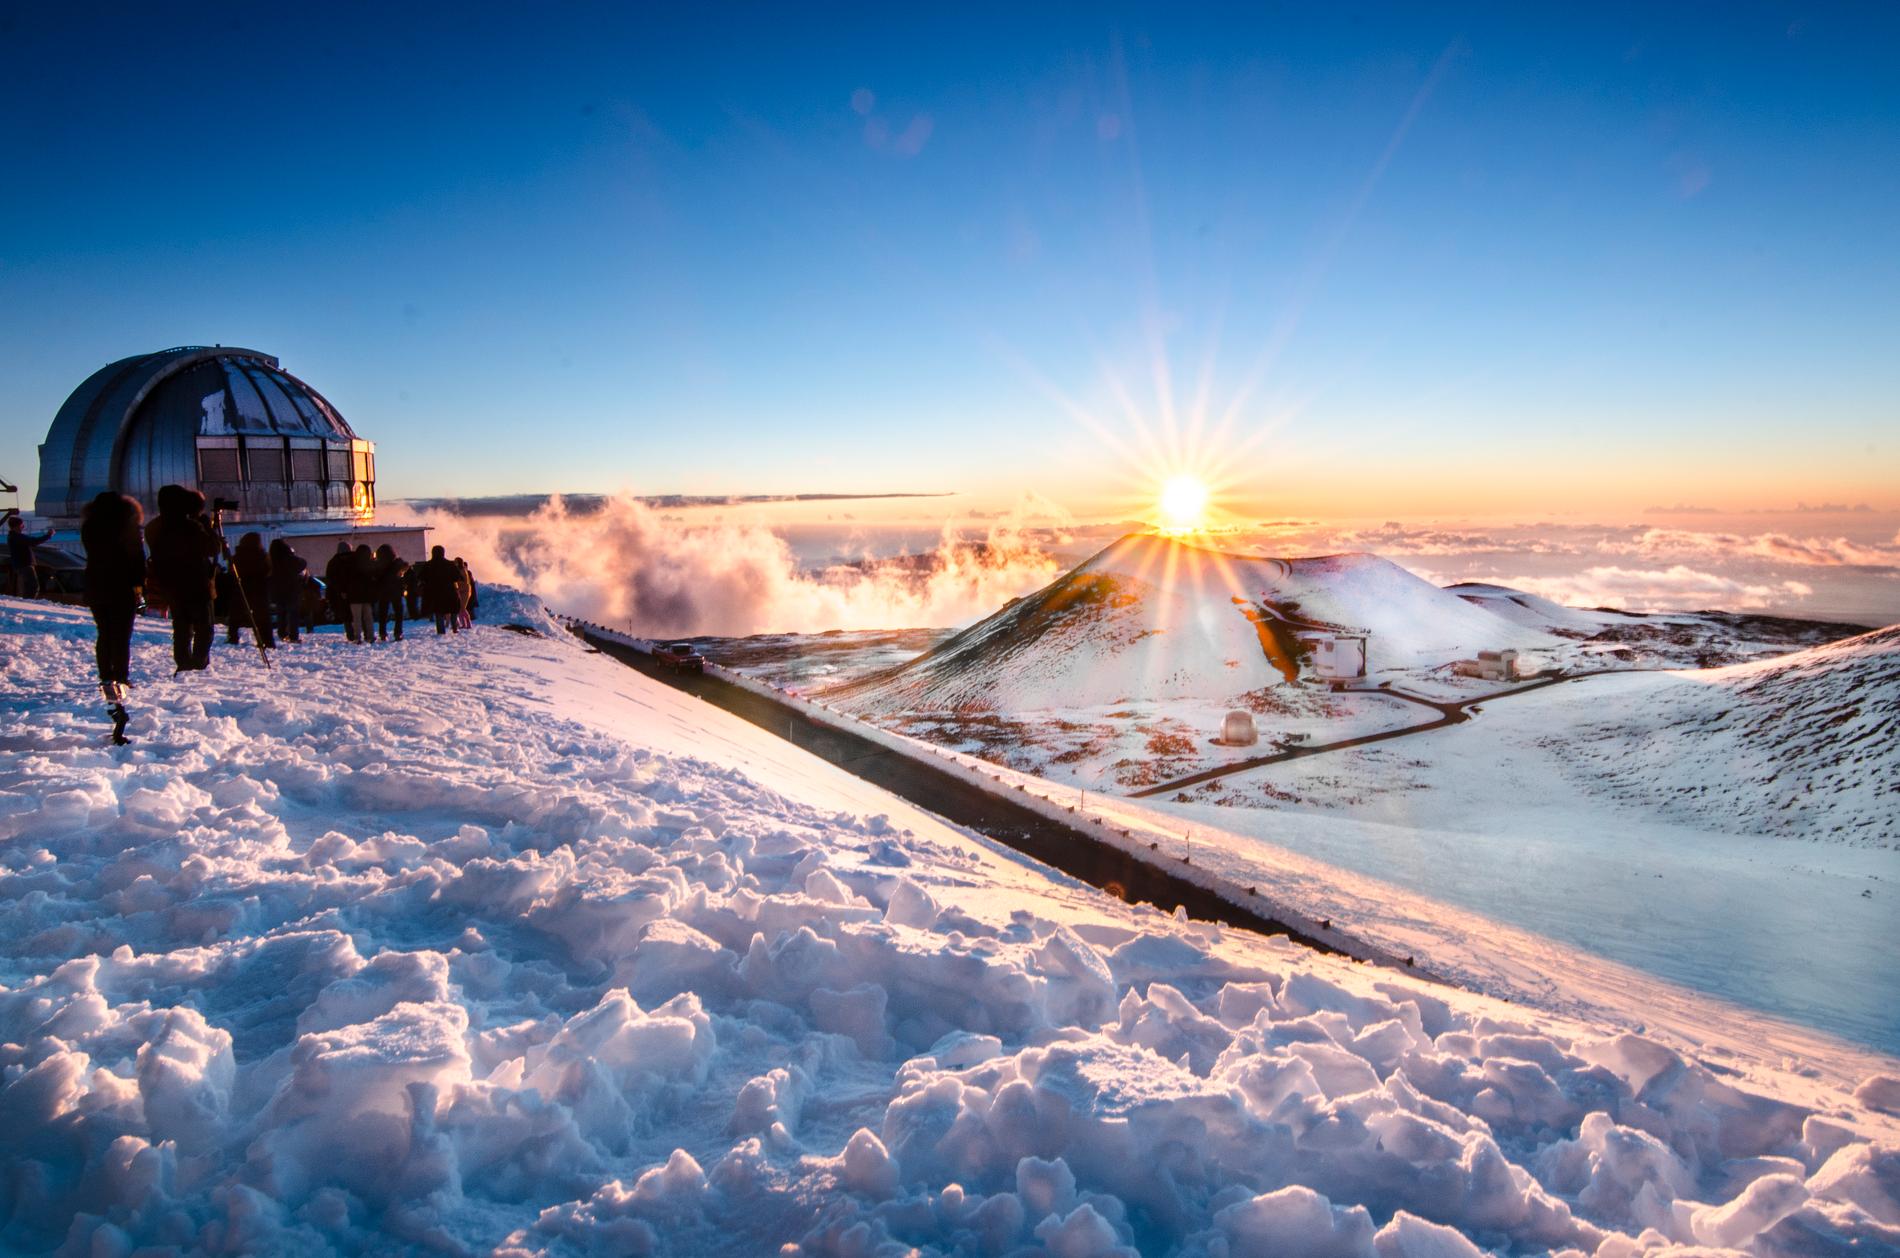 Snö på Hawaiis högsta berg Mauna Kea, här på en bild från 2013.